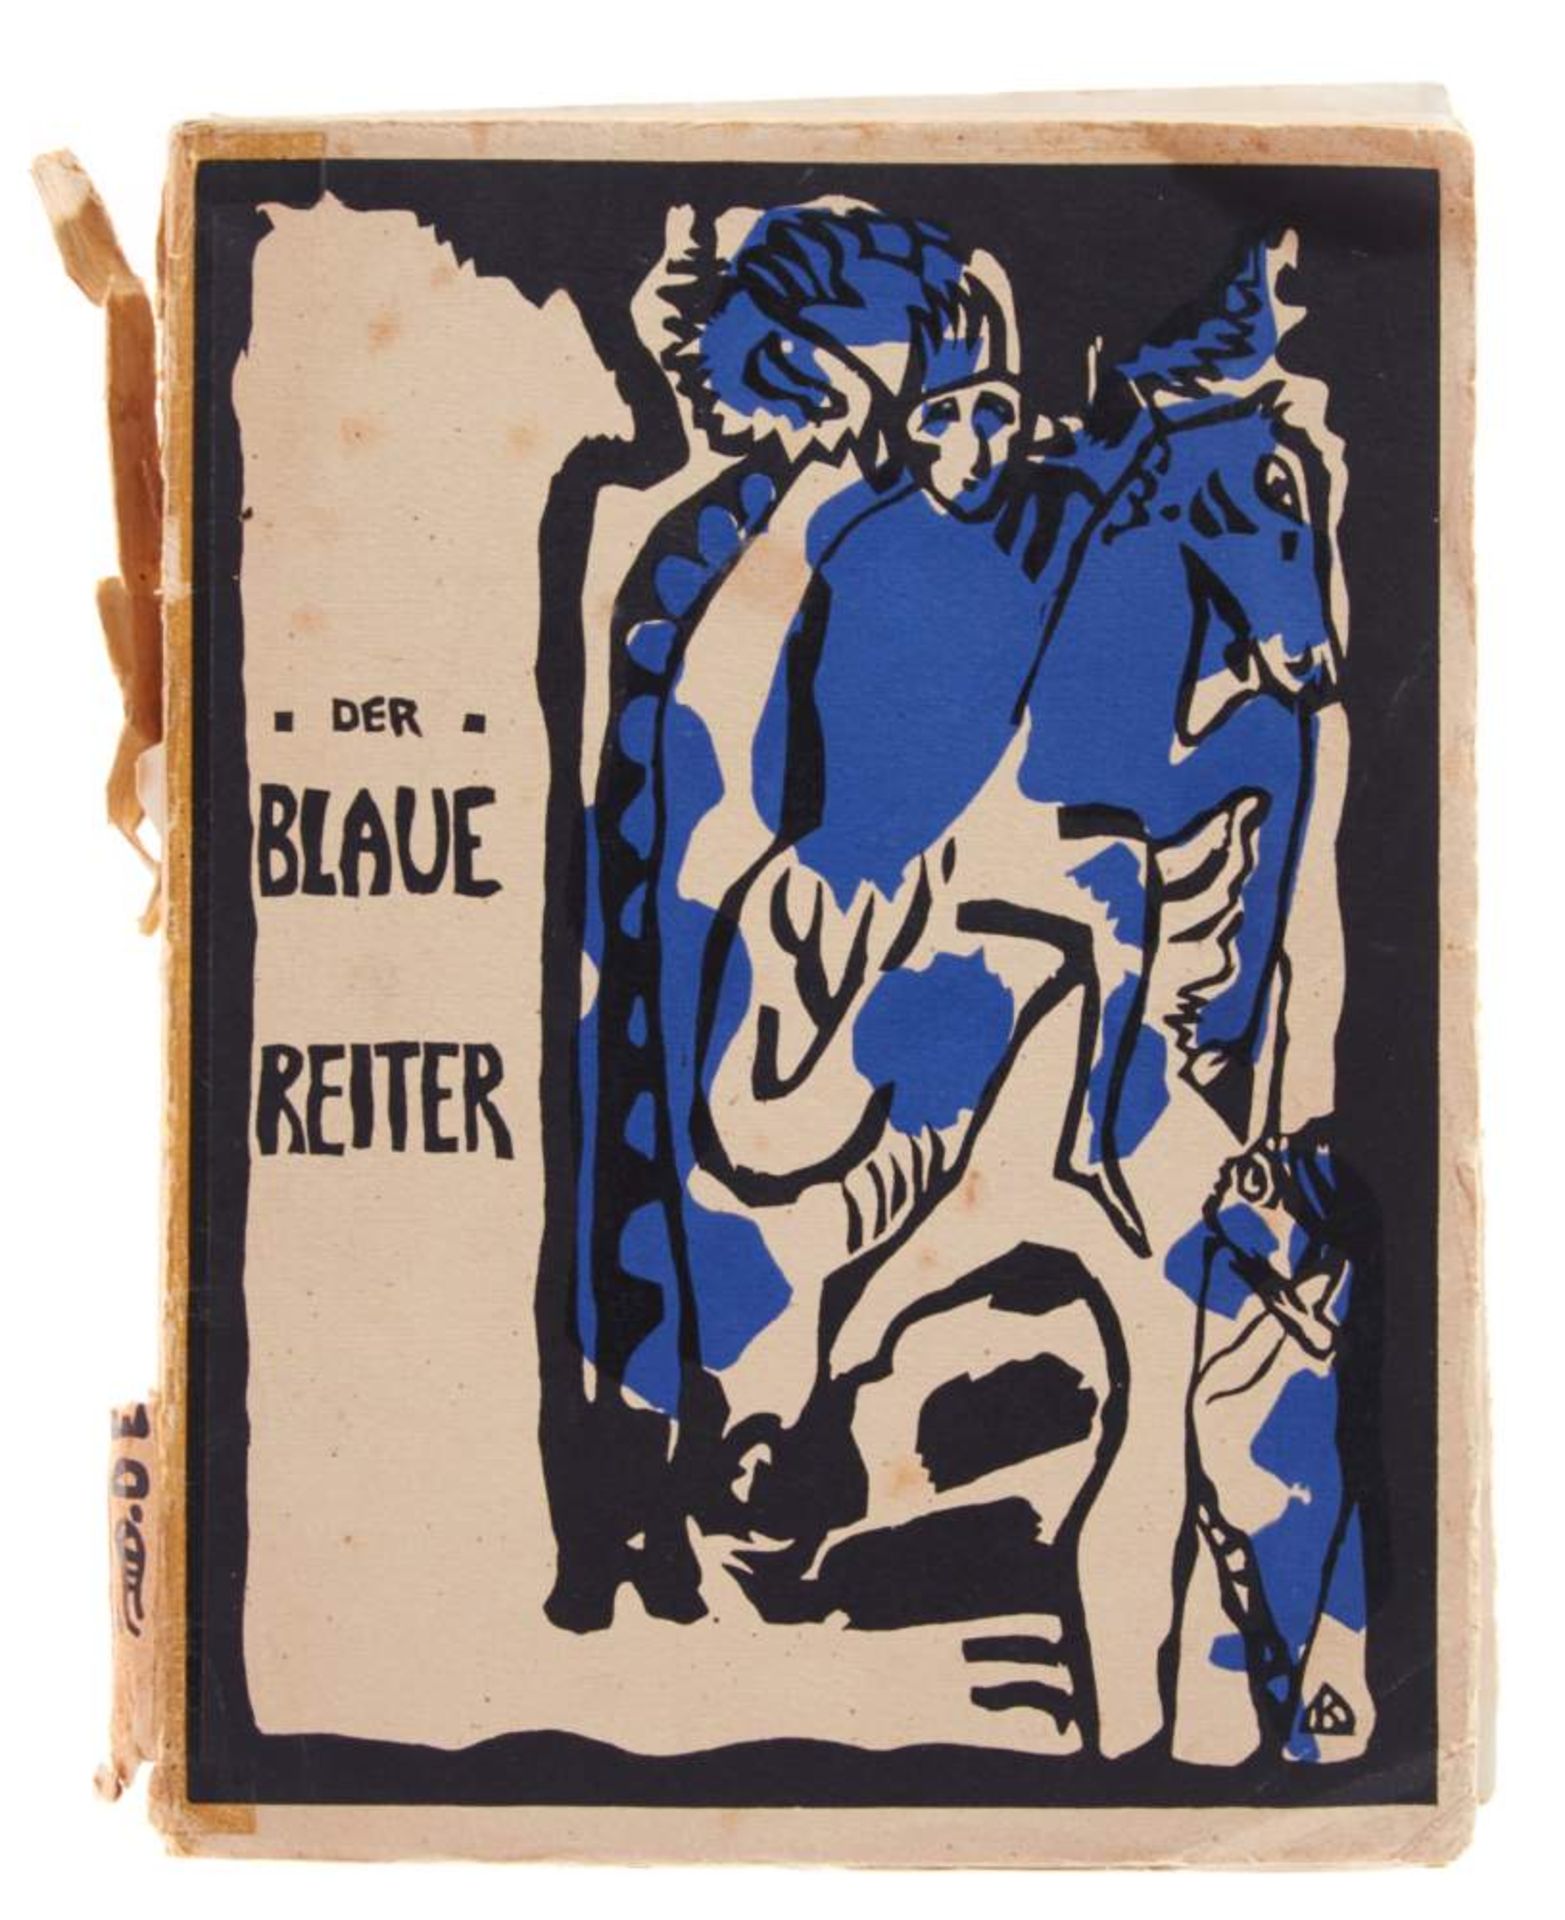 Blaue Reiter, Der. Hrsg. von (W.) Kandinsky und F. Marc. 2. Aufl. München, Piper, 1914. 4°. Mit